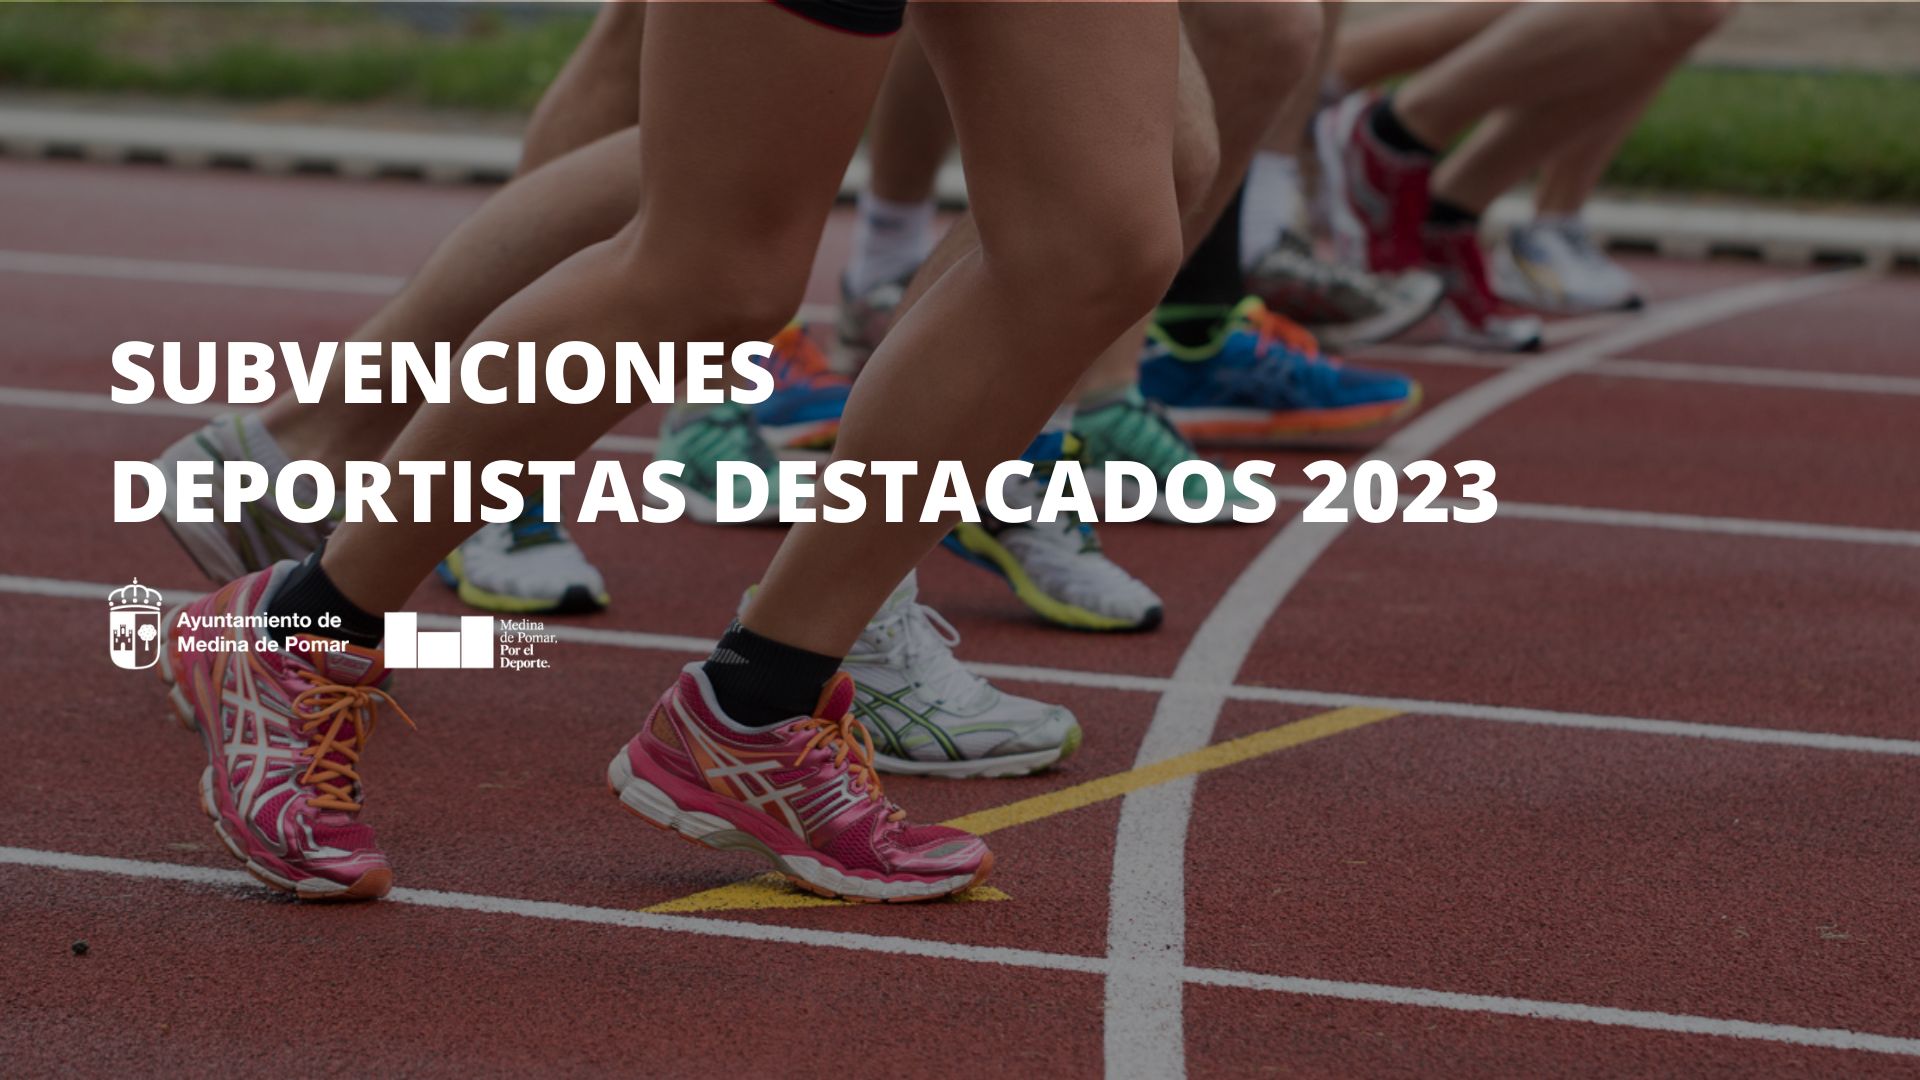 Subvenciones a deportistas individuales destacados 2023